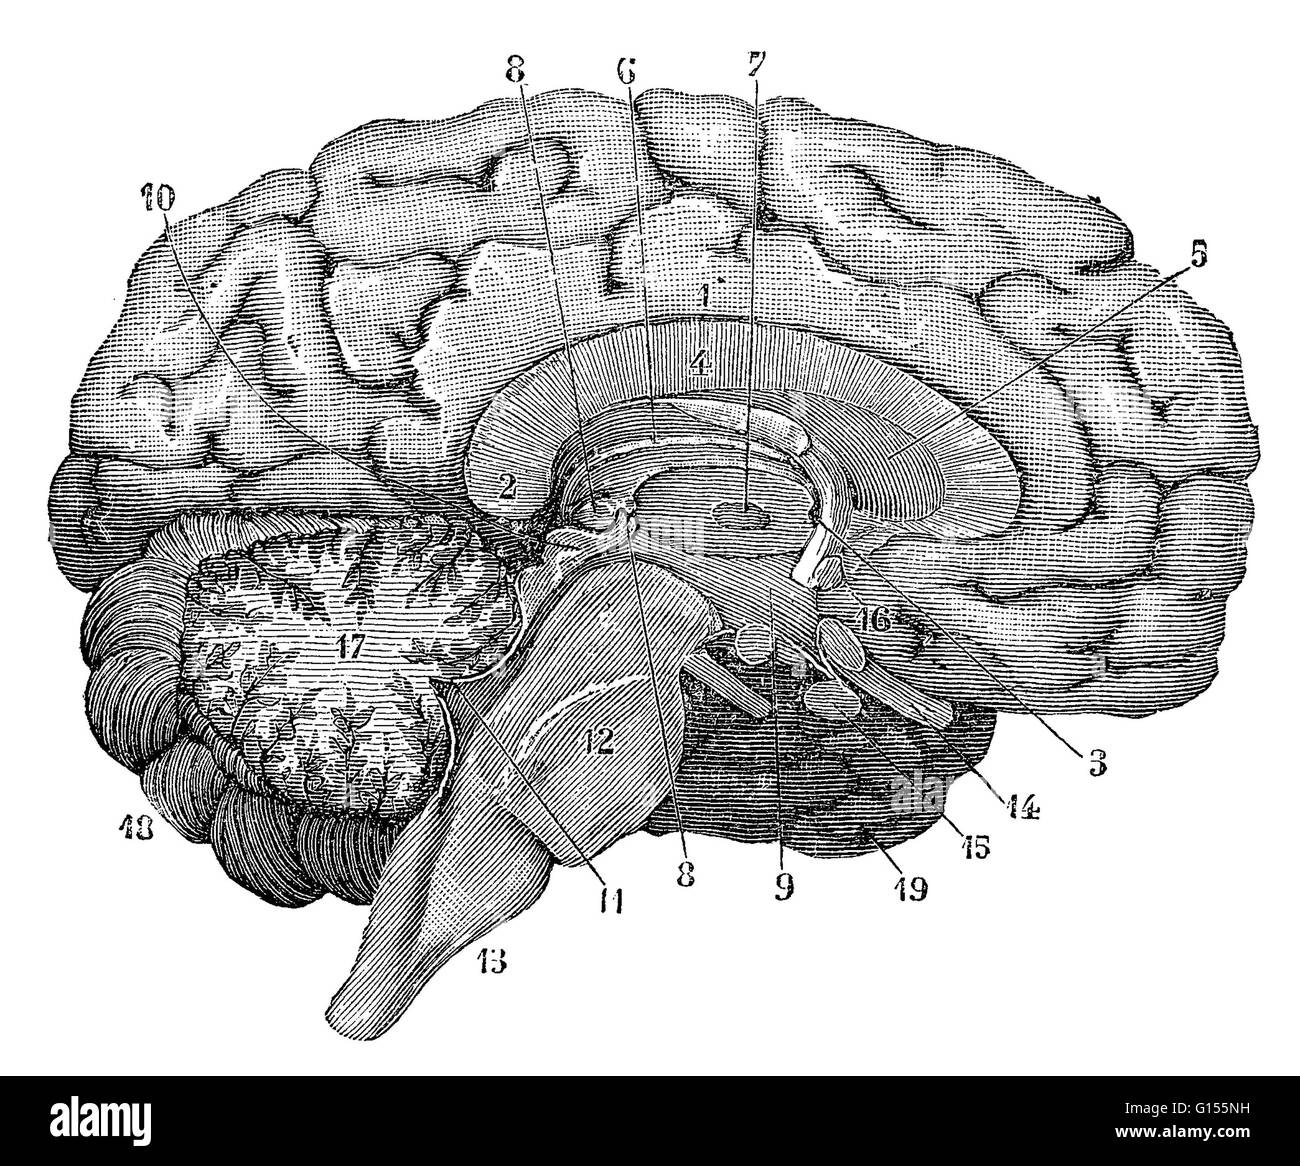 Illustrazione di una sezione trasversale del cervello che mostra parti come il cervello, cervelletto, corpo calloso, micollo allungato, lobo temporale, l'ipotalamo, lobo frontale, sistema limbico, corpo calloso, lobo parietale, talamo, lobo occipitale, mesencefalo, Foto Stock